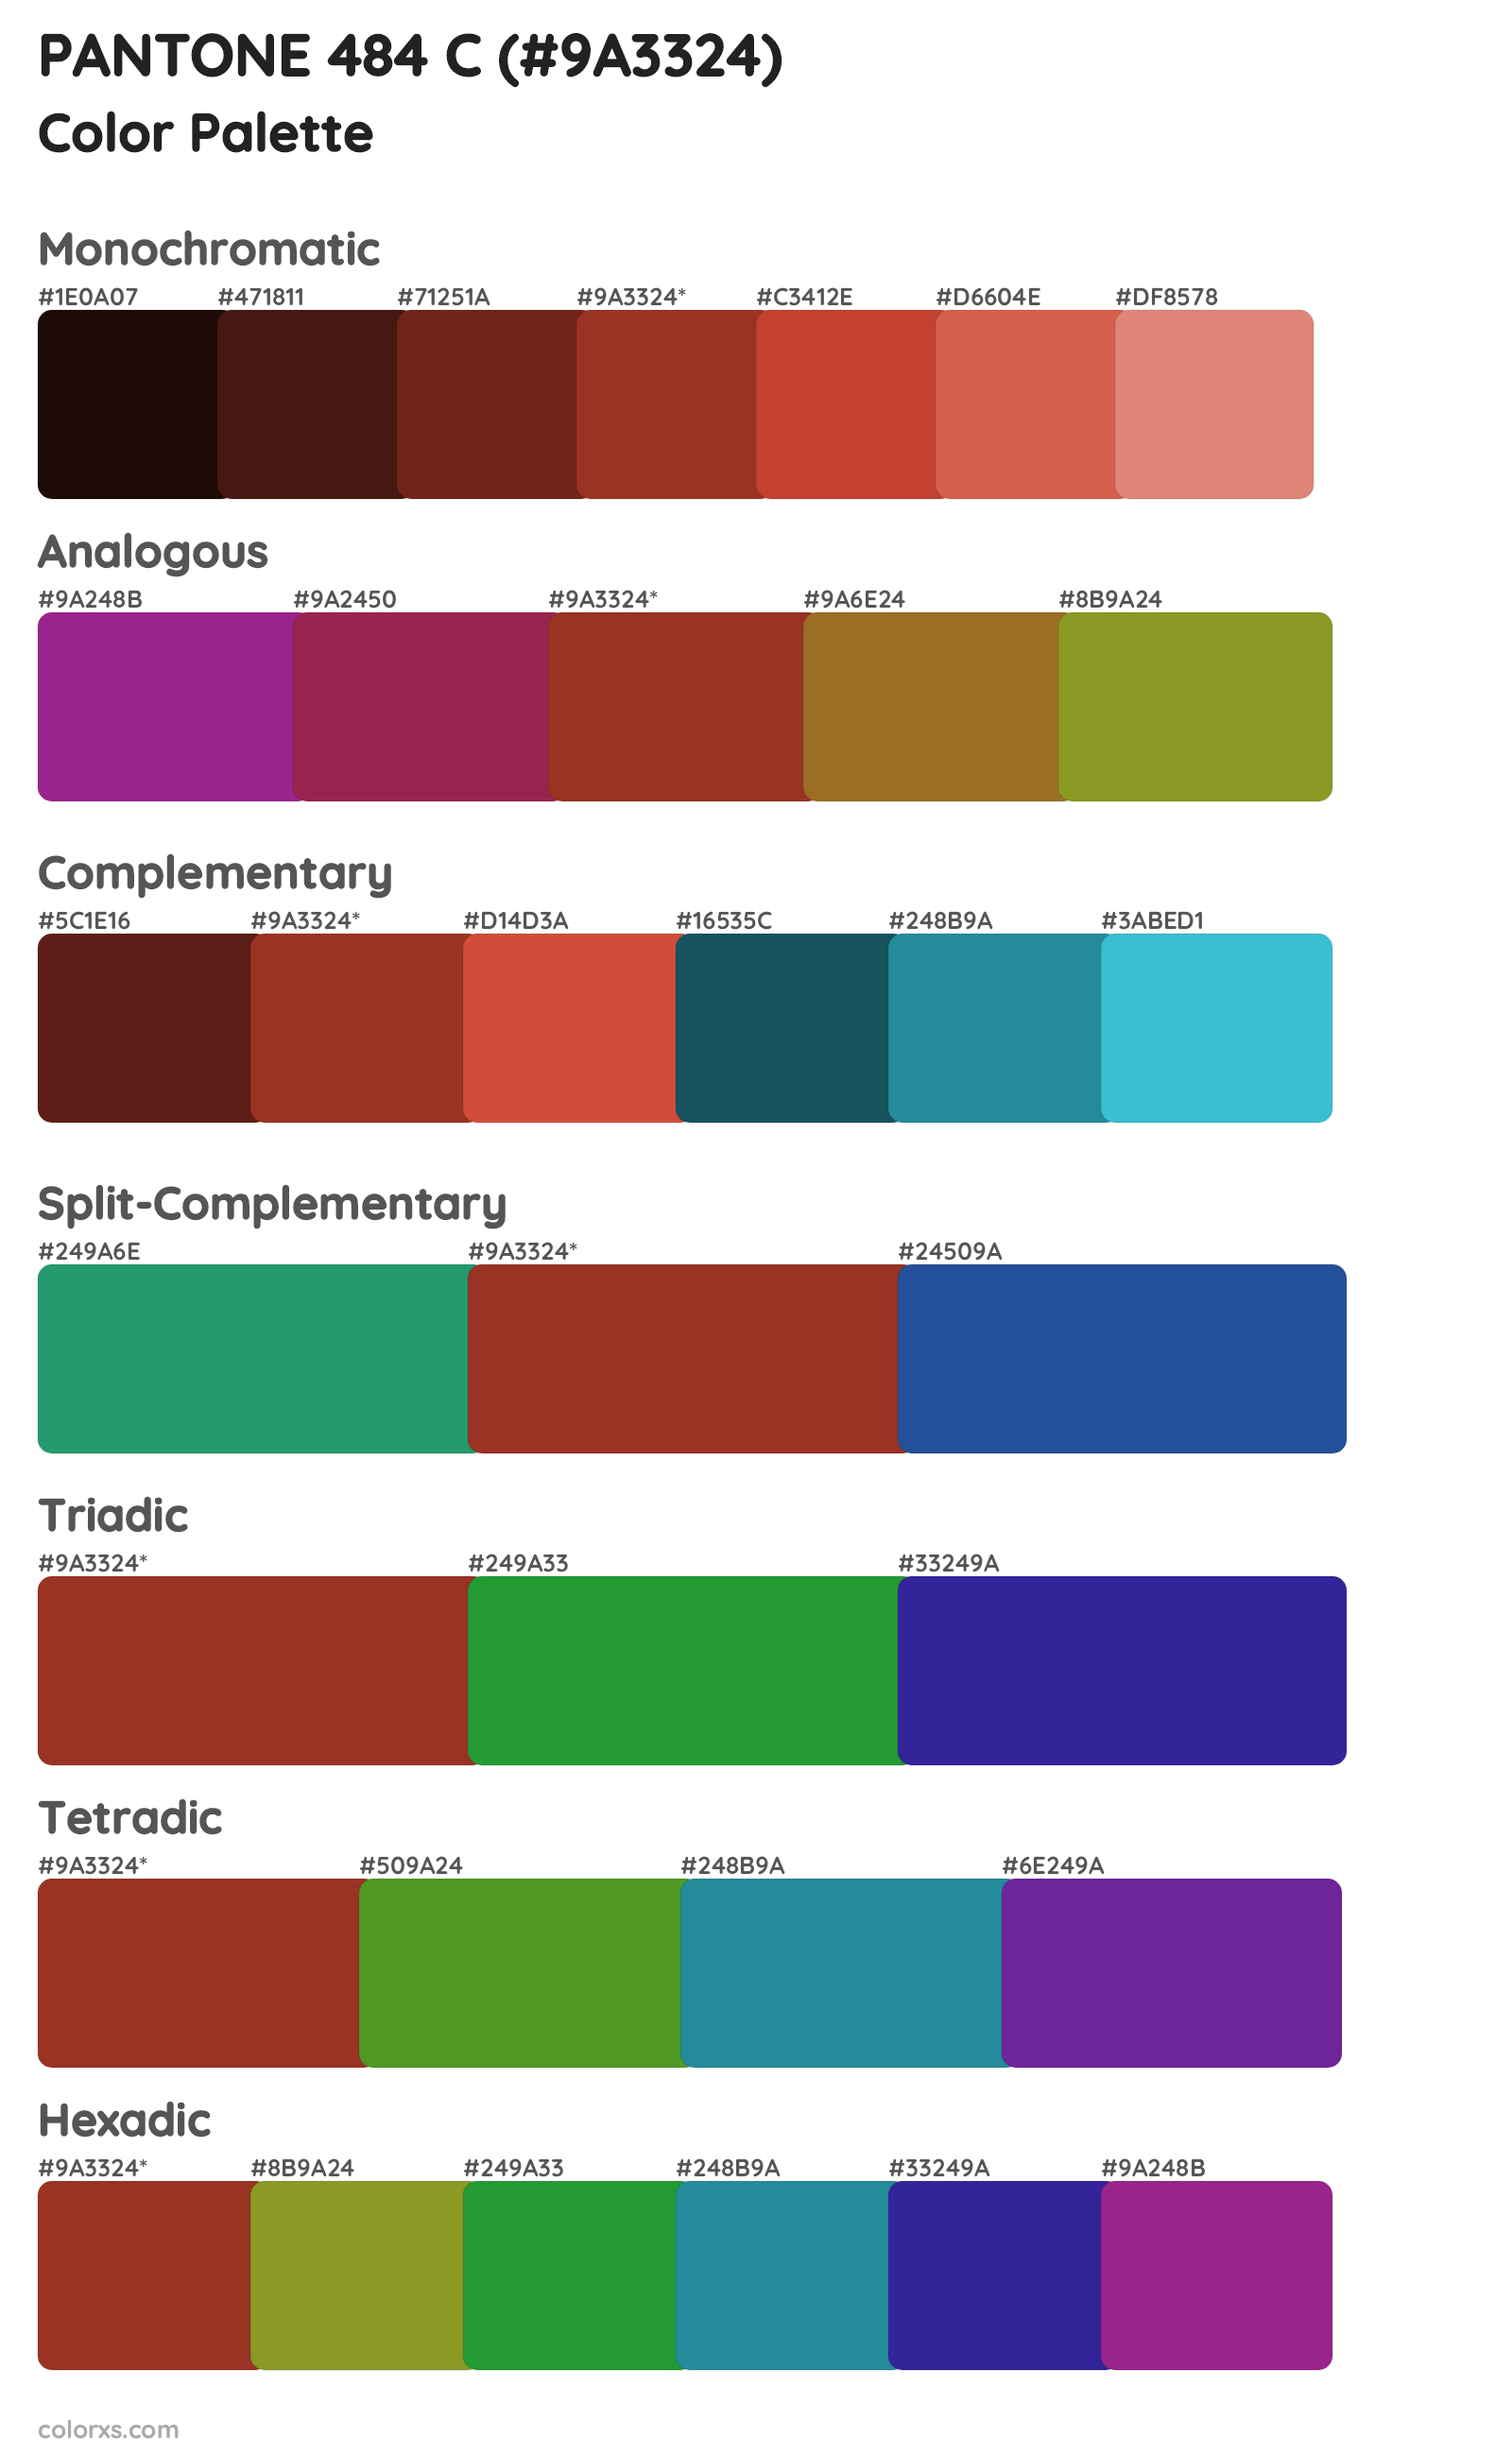 PANTONE 484 C Color Scheme Palettes